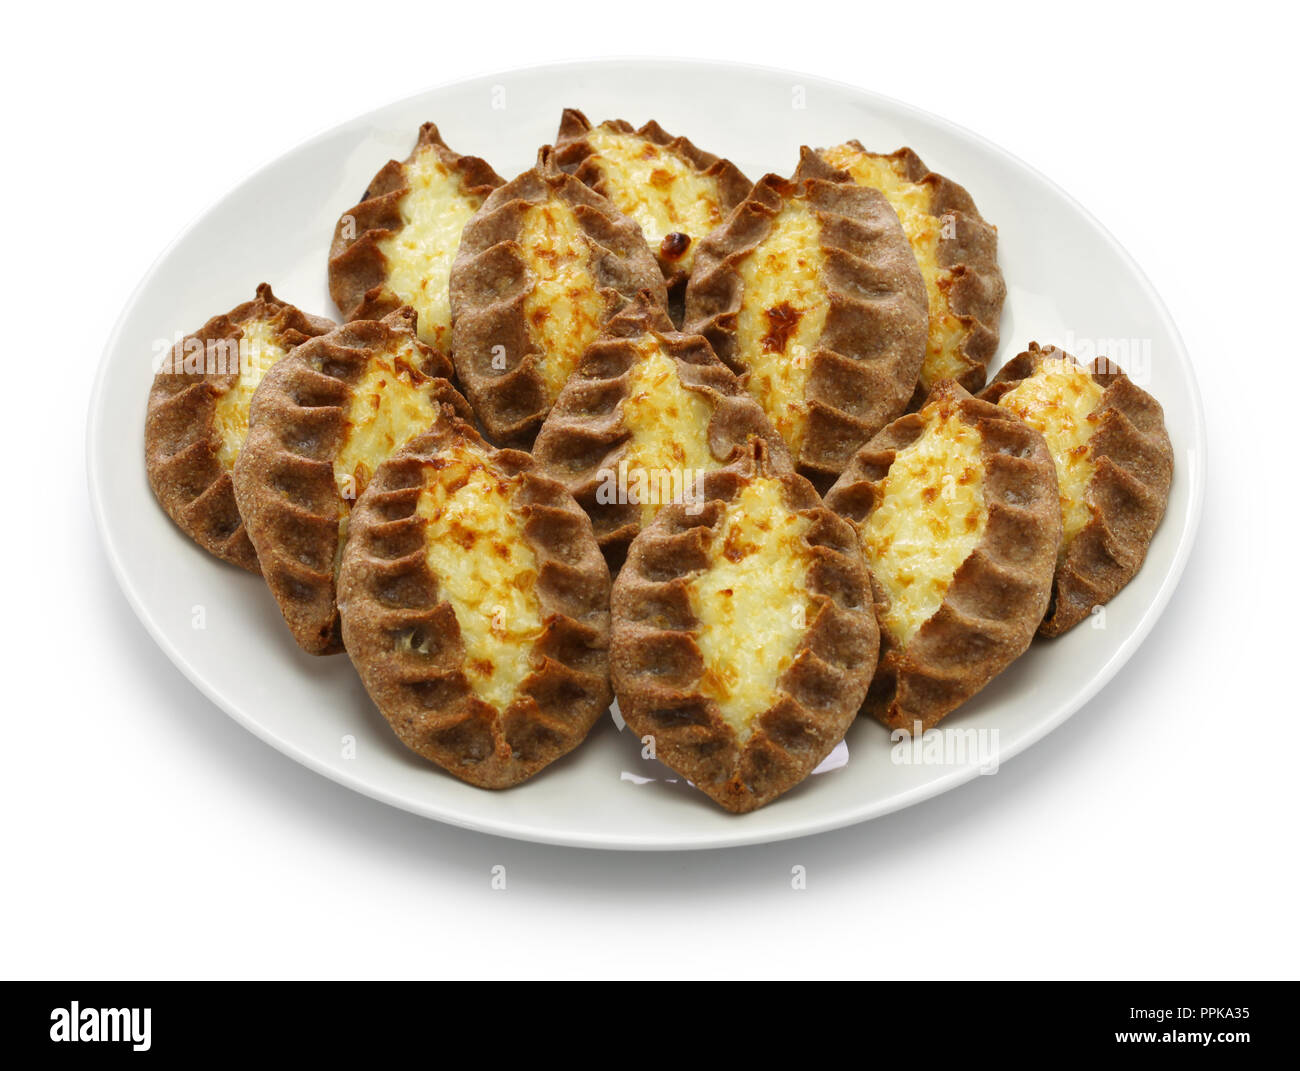 karjalanpiirakka, karelian pie, finnish food, finland breakfast Stock Photo